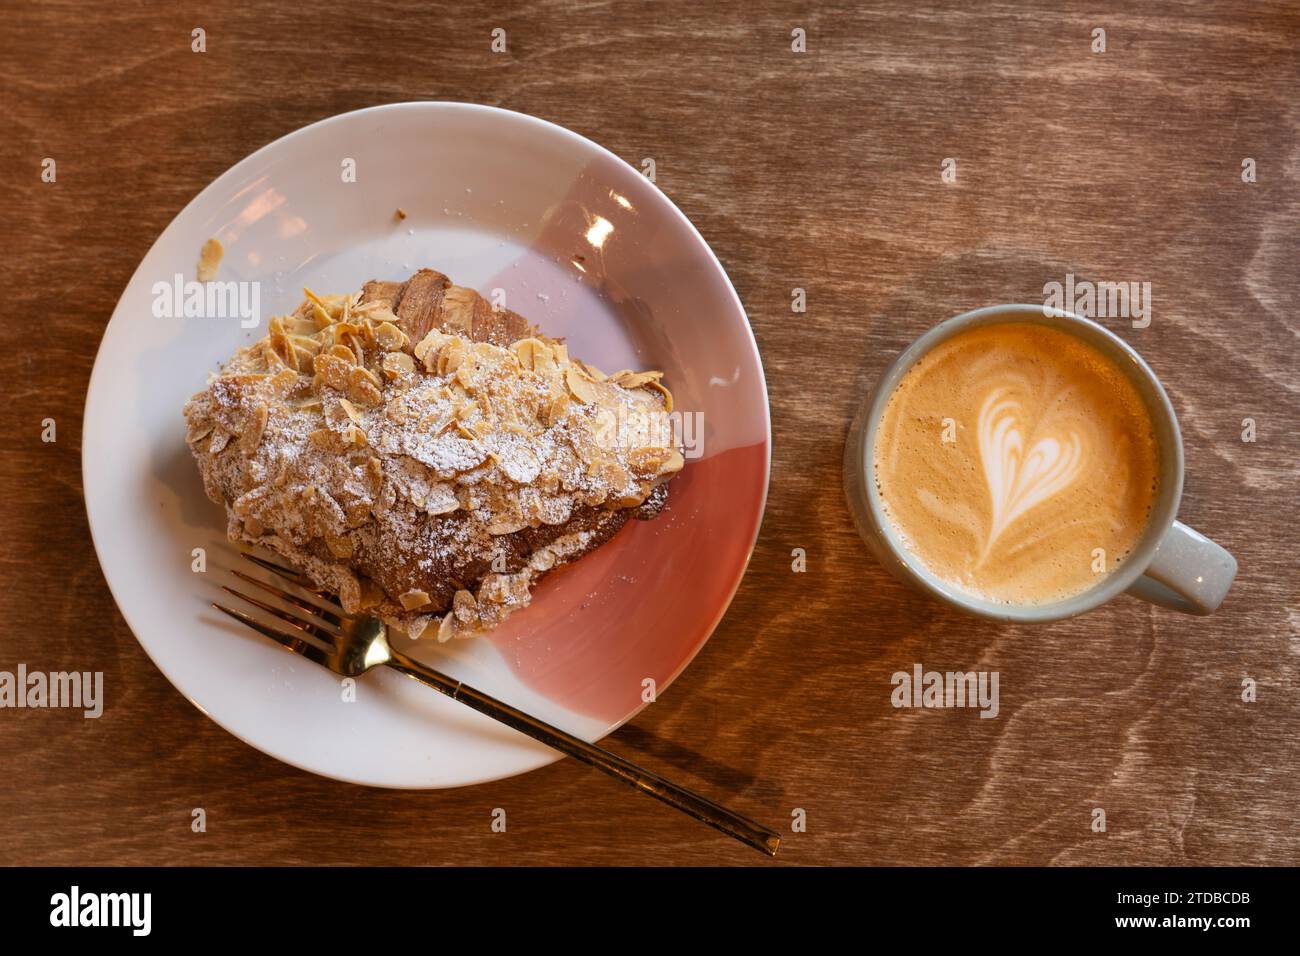 Un latte dans une tasse de café bu le matin dans un café à côté d'un croissant aux amandes. Symbole de coeur fait dans la crème sur le dessus du café. ROYAUME-UNI Banque D'Images